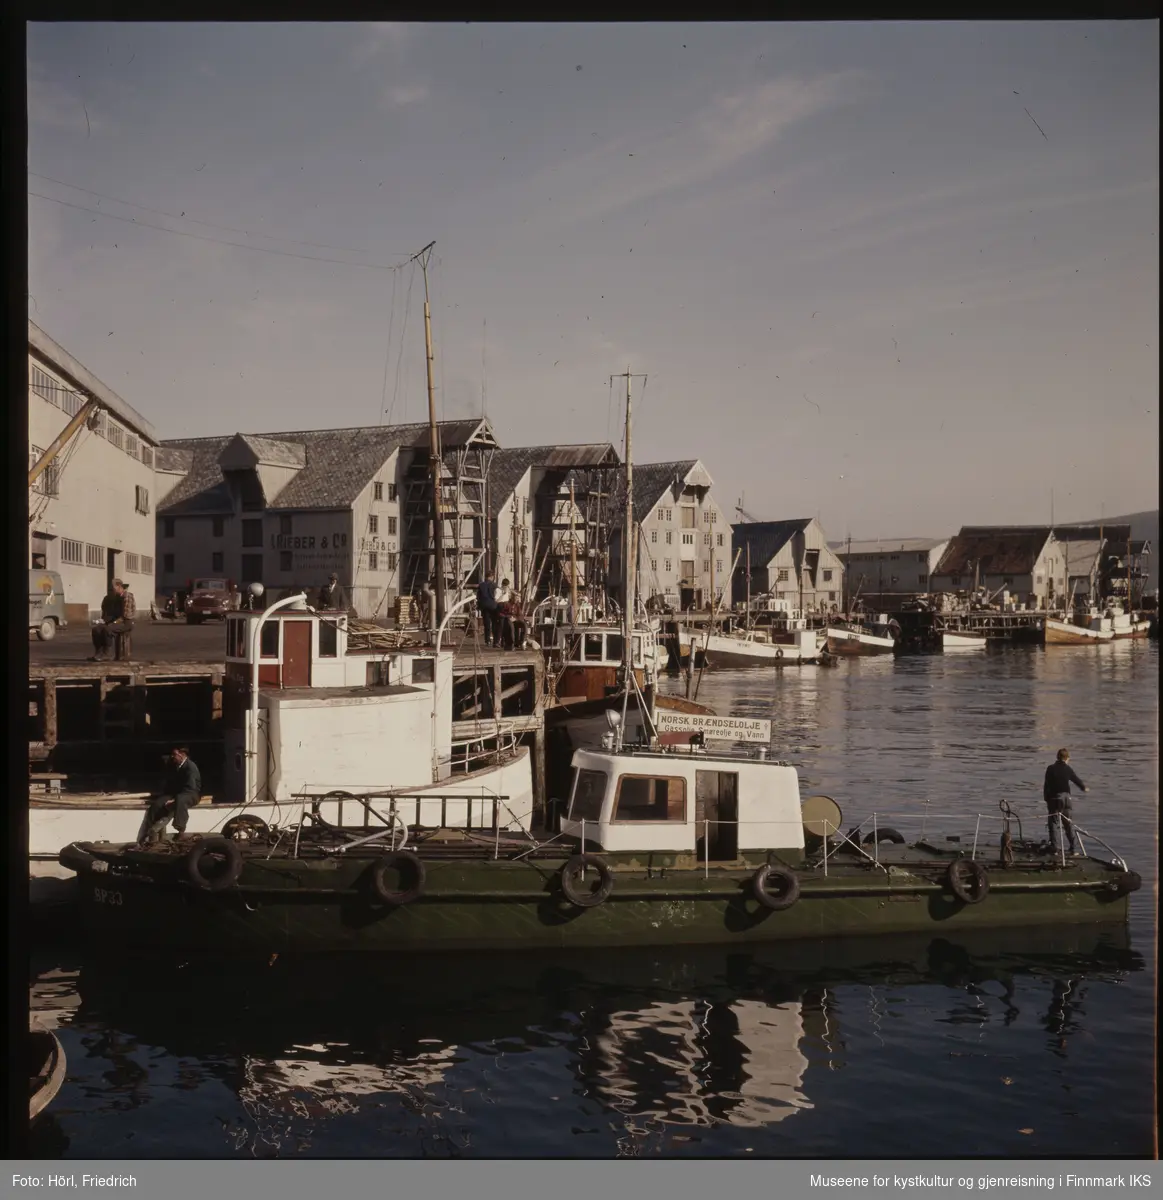 Havnesceneri i Tromsø i 1957 eller 1958. I forgrunnen ser man en grønn båt med et skilt for "Norsk Brændselsolje A/S". Ellers ser man fiskebåter ved kaia og mange pakkhus, blant annet til "Rieber & Co. A/S". Det ser ut som om det er flott vær og menn sitter på fiskebåten fremst i bilde samt på kaia.